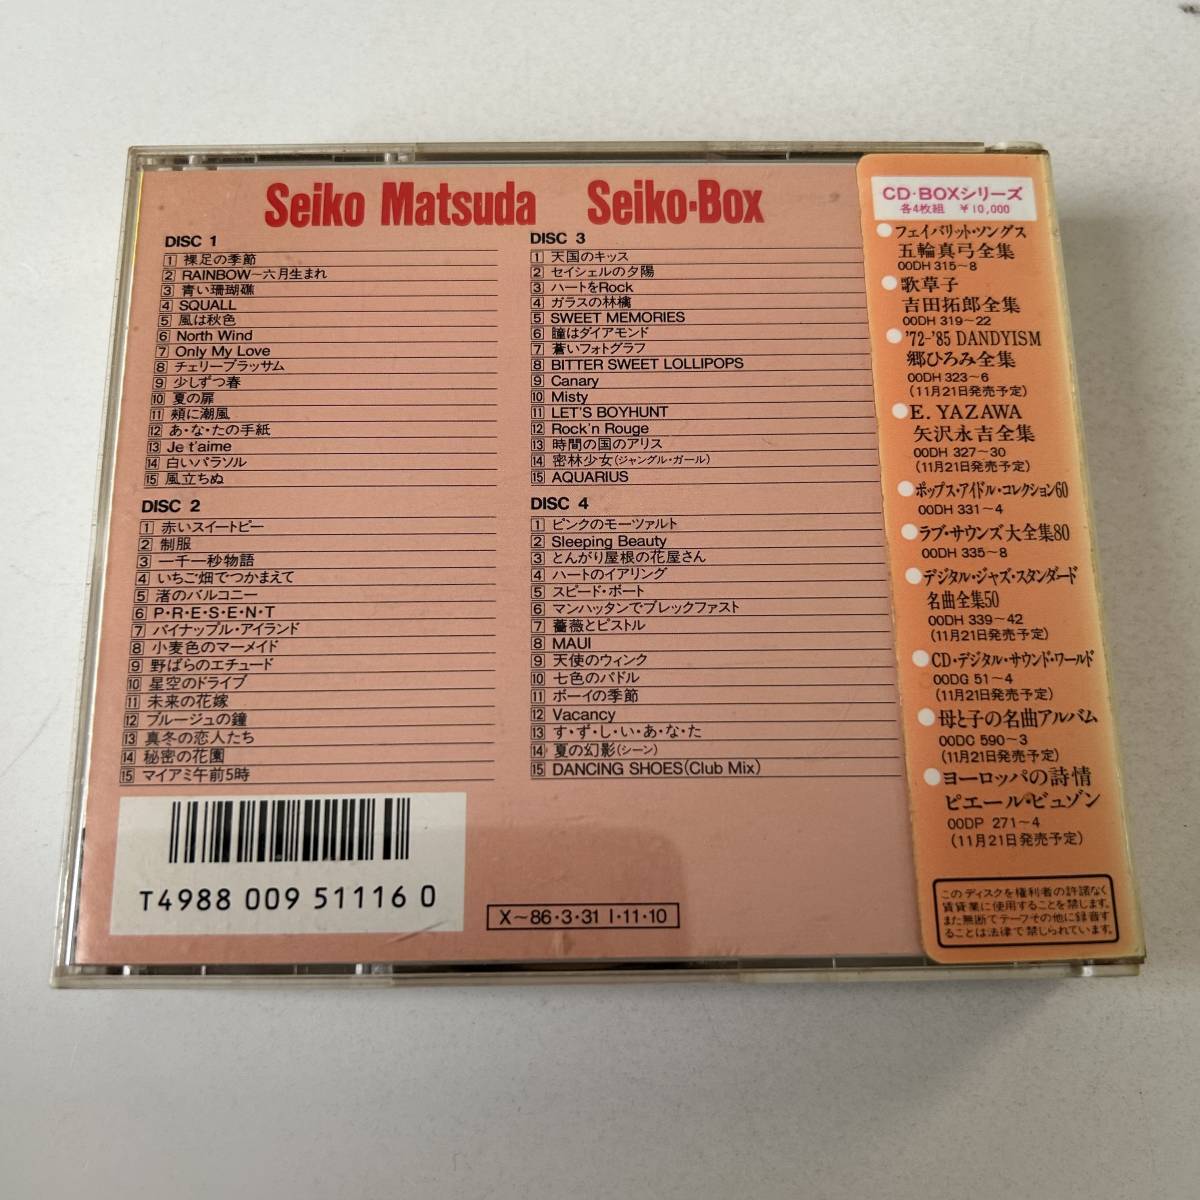  旧規格シール帯 ◇松田聖子 全集　Seiko Box/4枚組　全60曲収録 ◇ _画像2